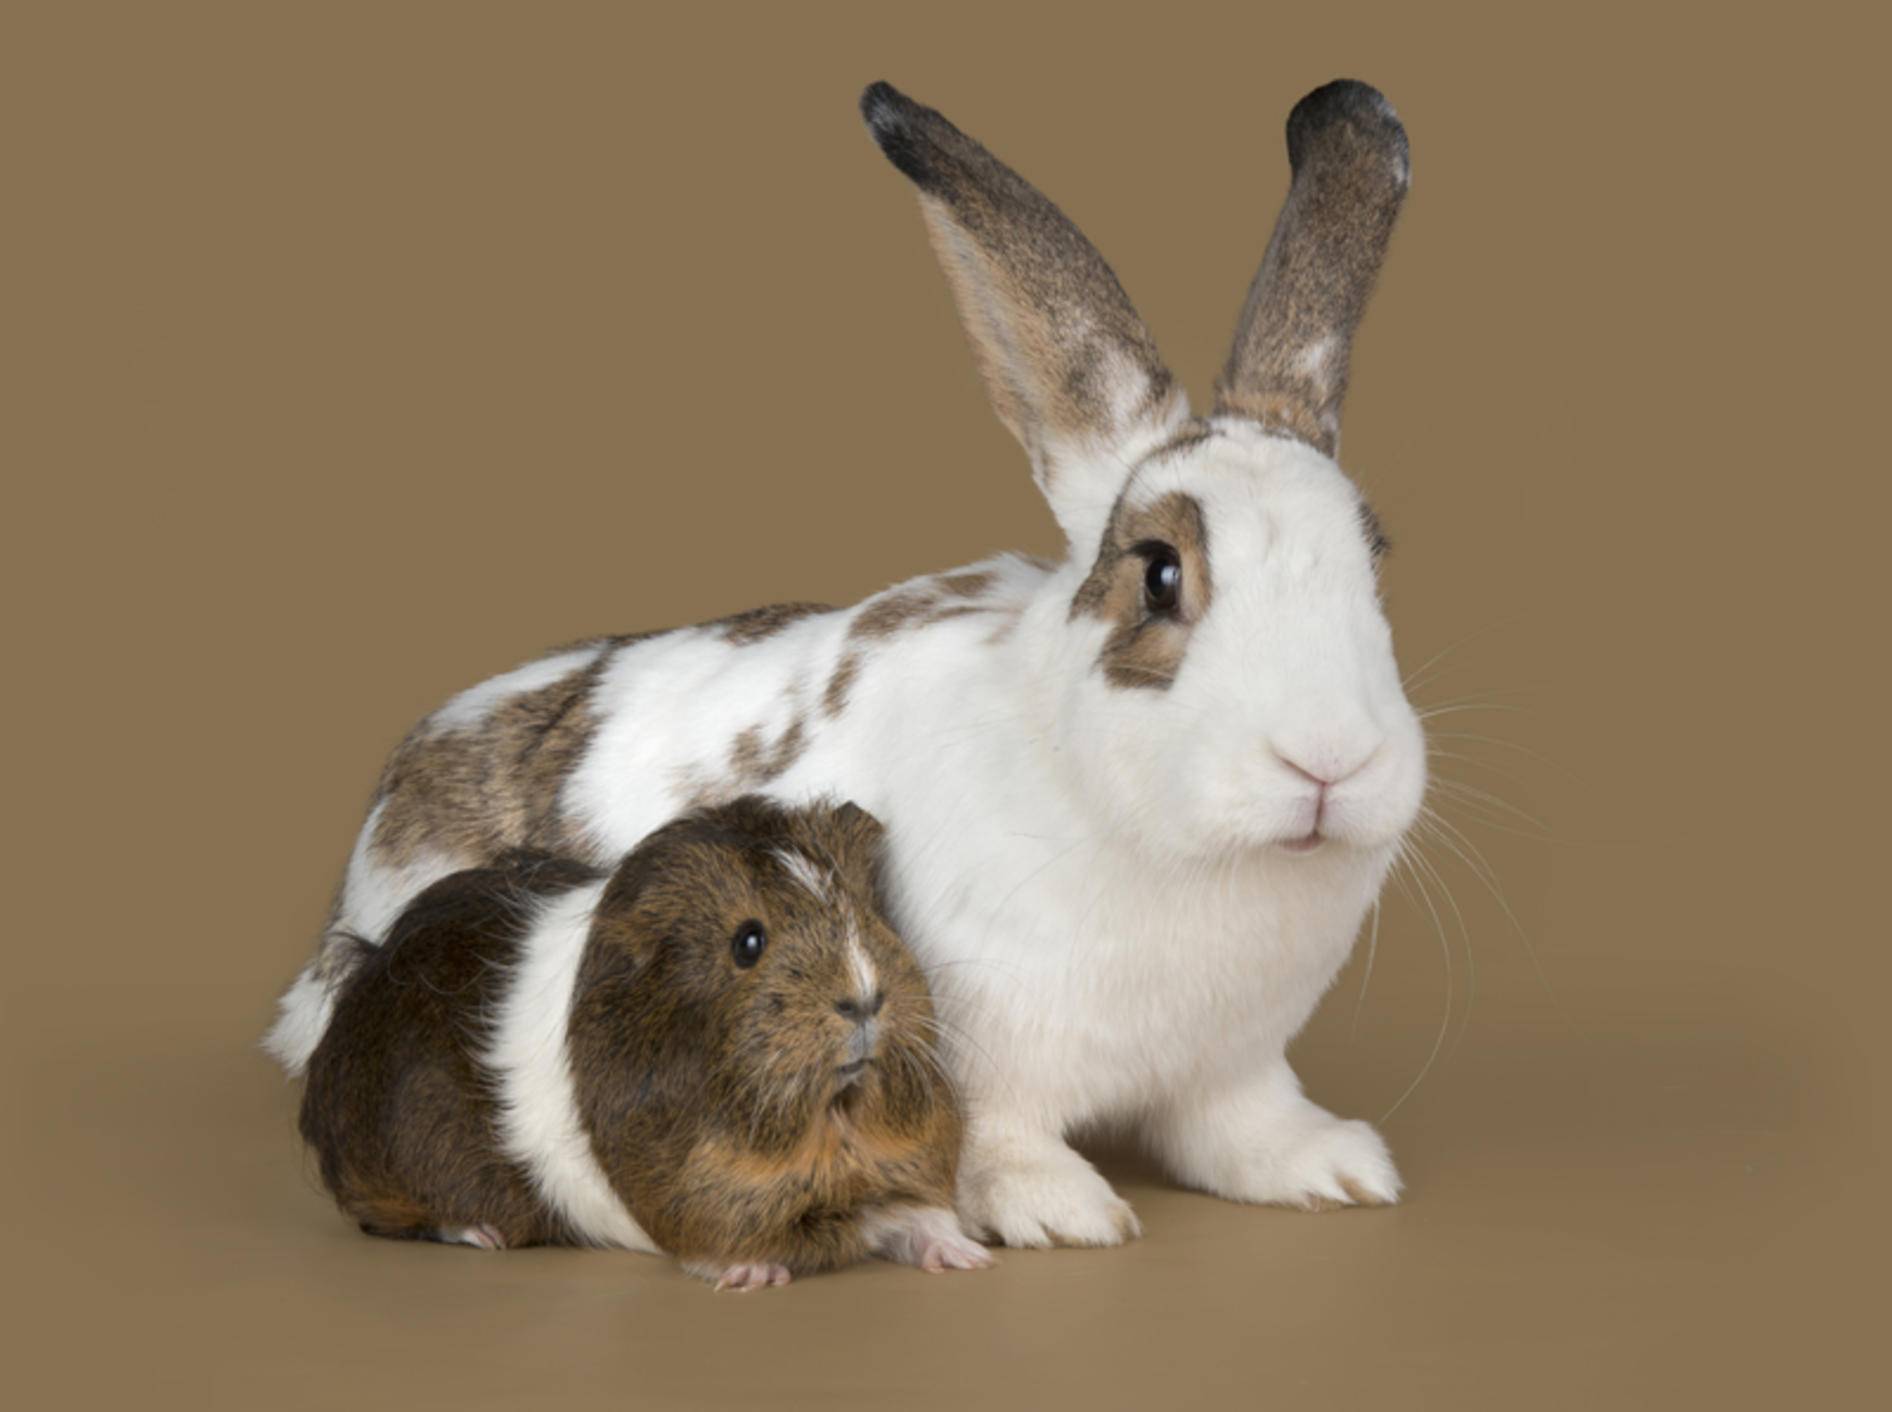 Meerschweinchen und Kaninchen kommunizieren auf ganz unterschiedliche Art und Weise – Shutterstock / photos2013